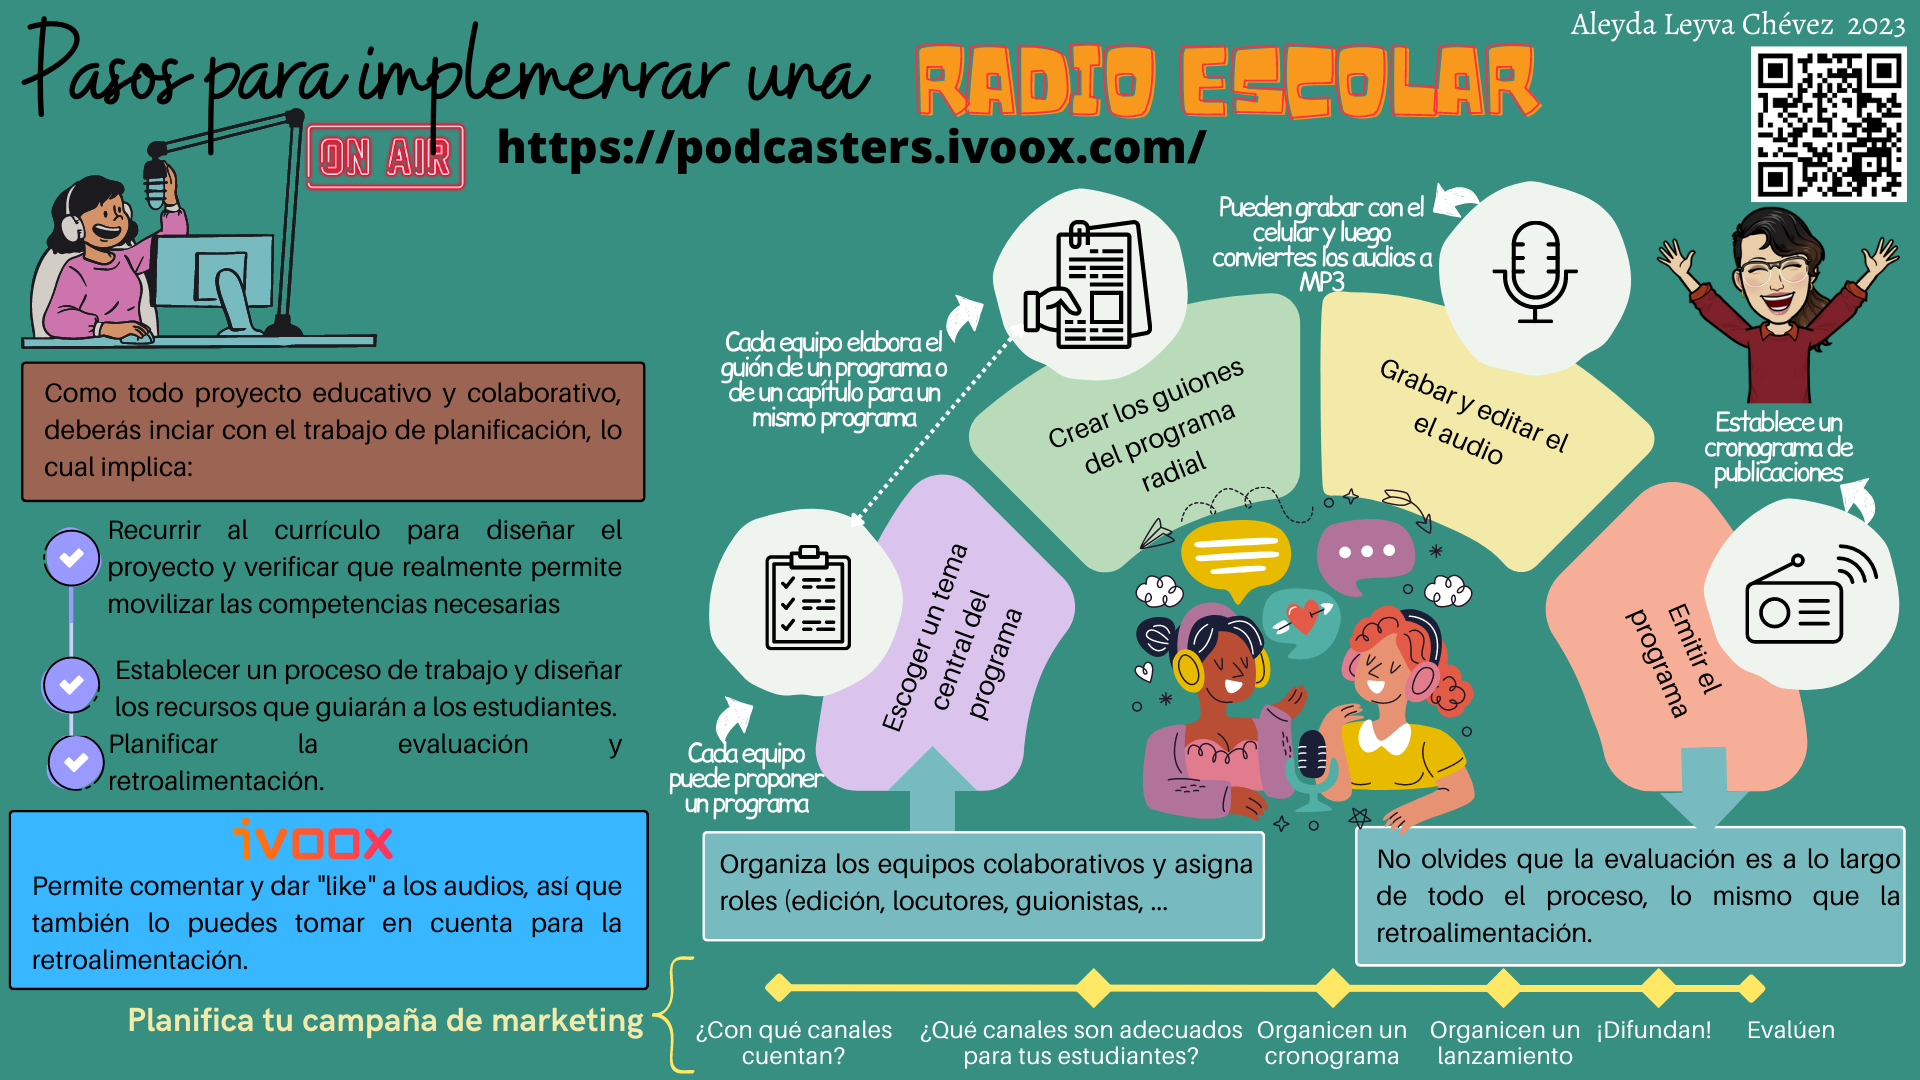 Pasos para implementar la radio escolar